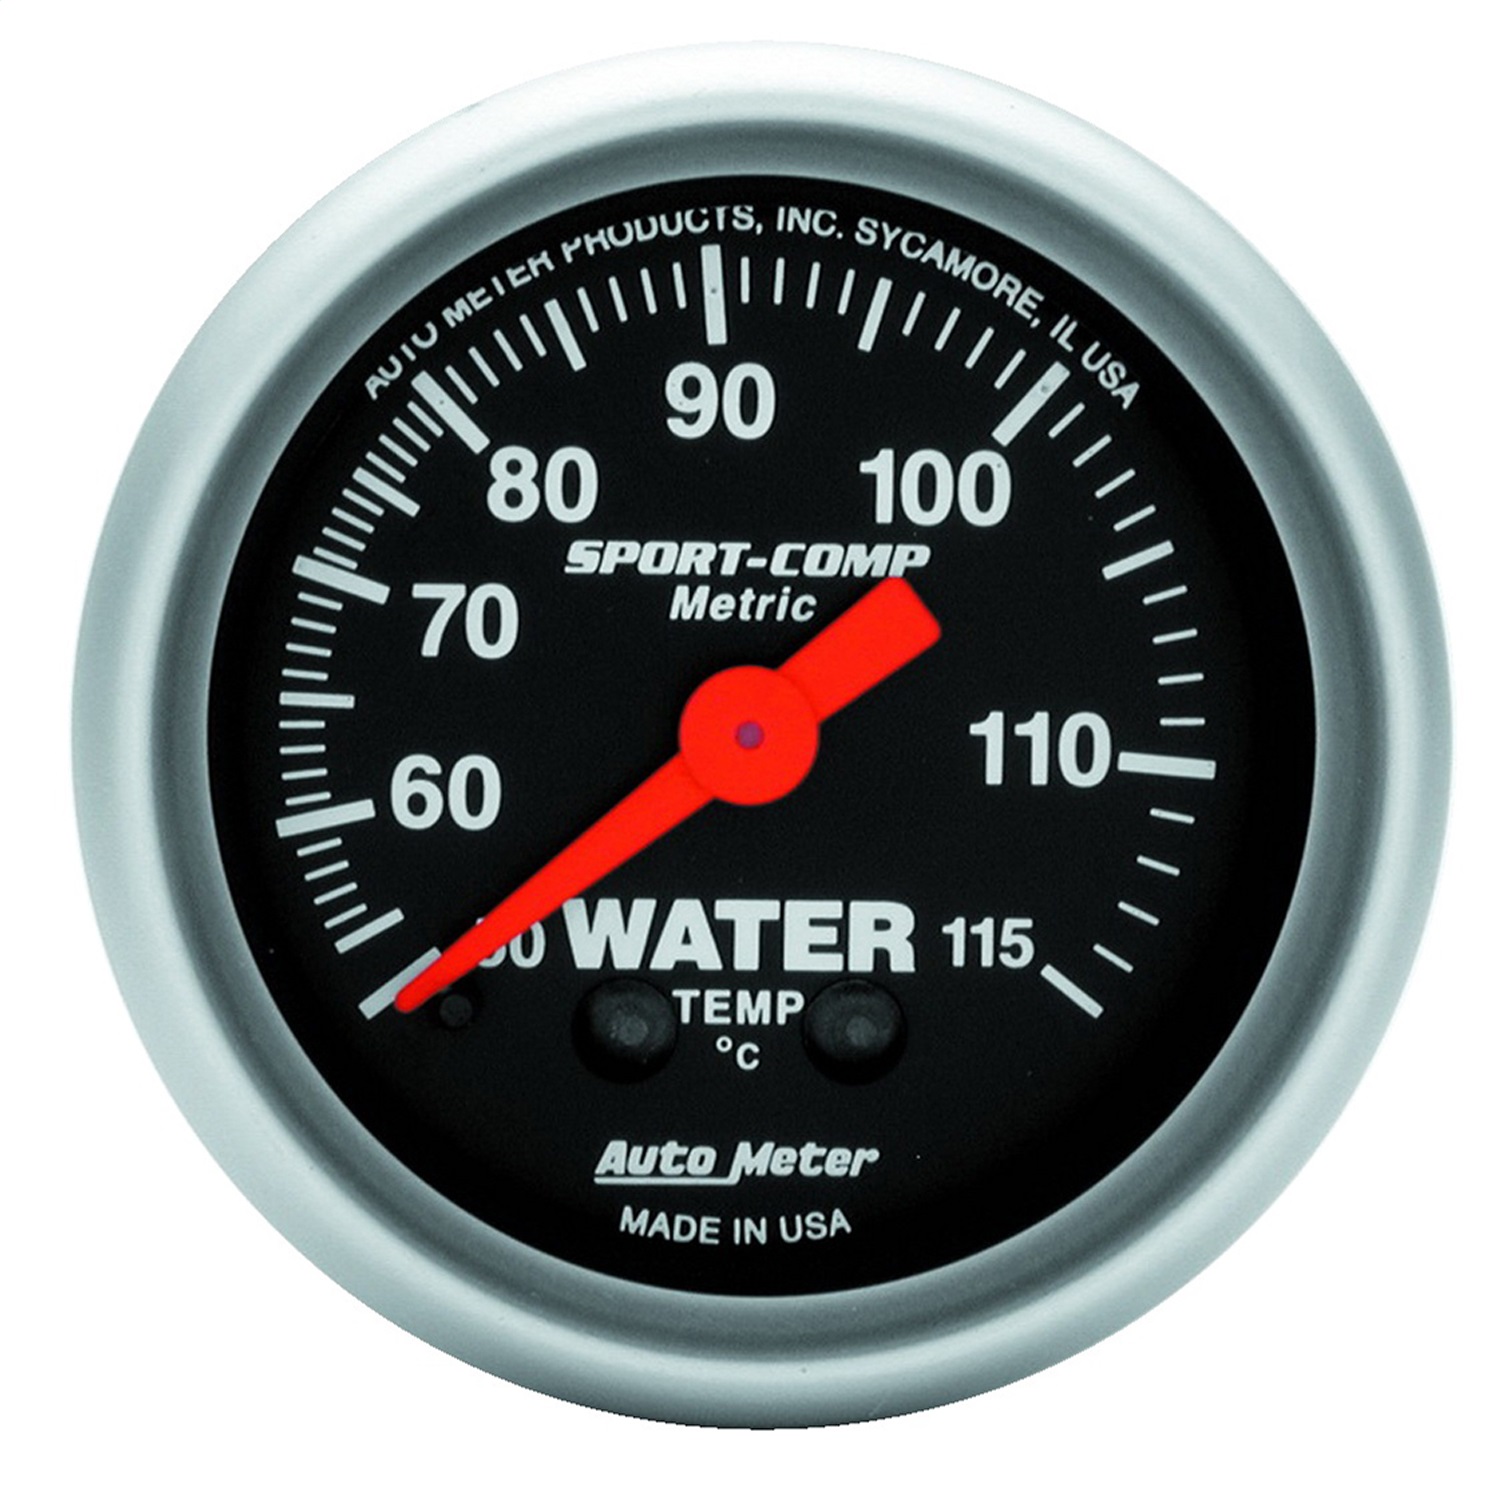 Auto Meter Auto Meter 3332-M Sport-Comp; Mechanical Metric Water Temperature Gauge